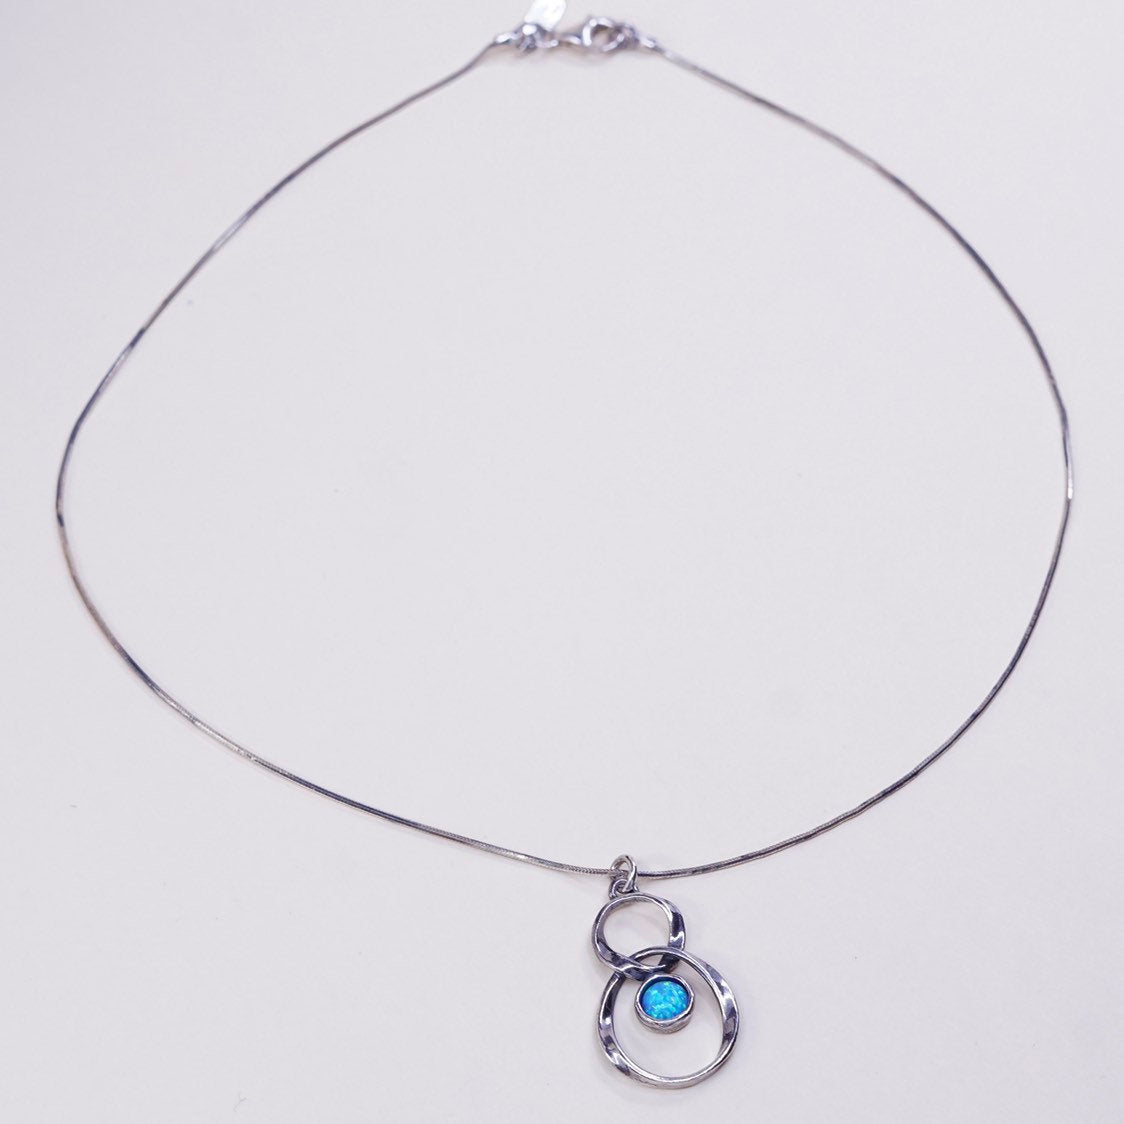 16", 1mm, vtg shablool sterling silver snake chain w/ handmade opal pendant